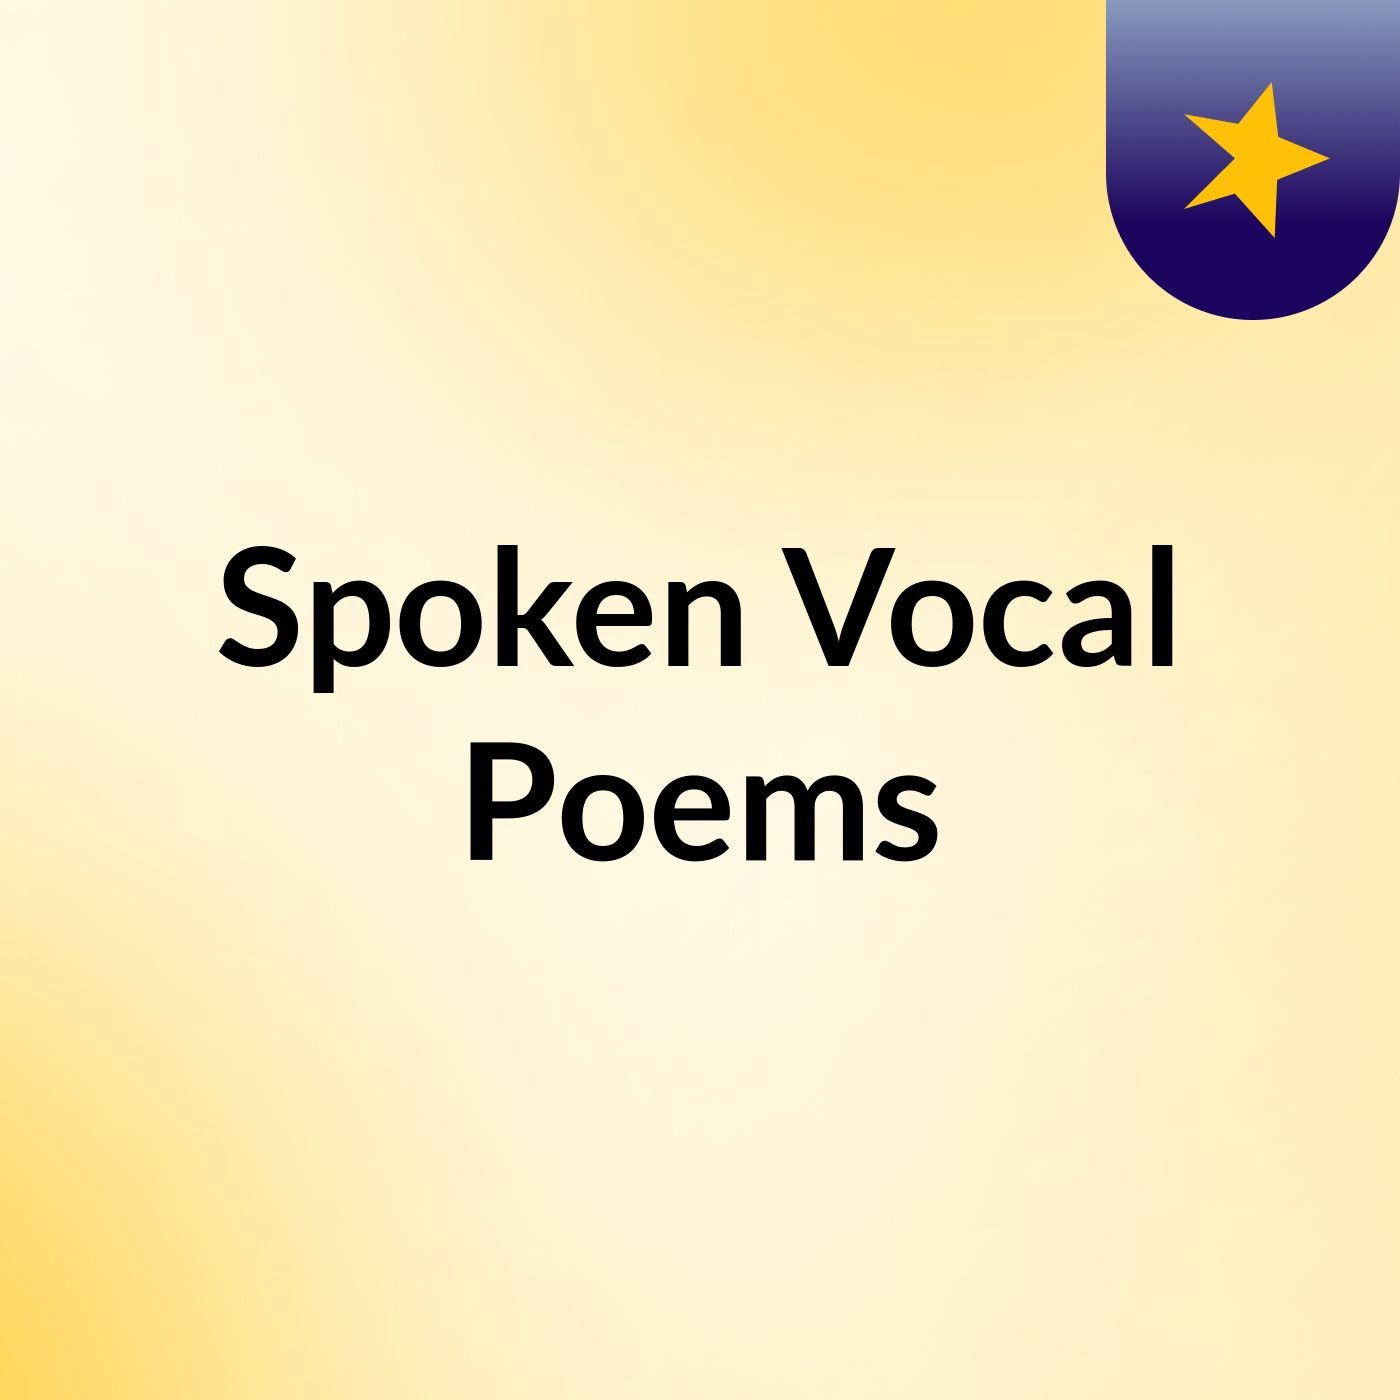 Spoken Vocal Poems